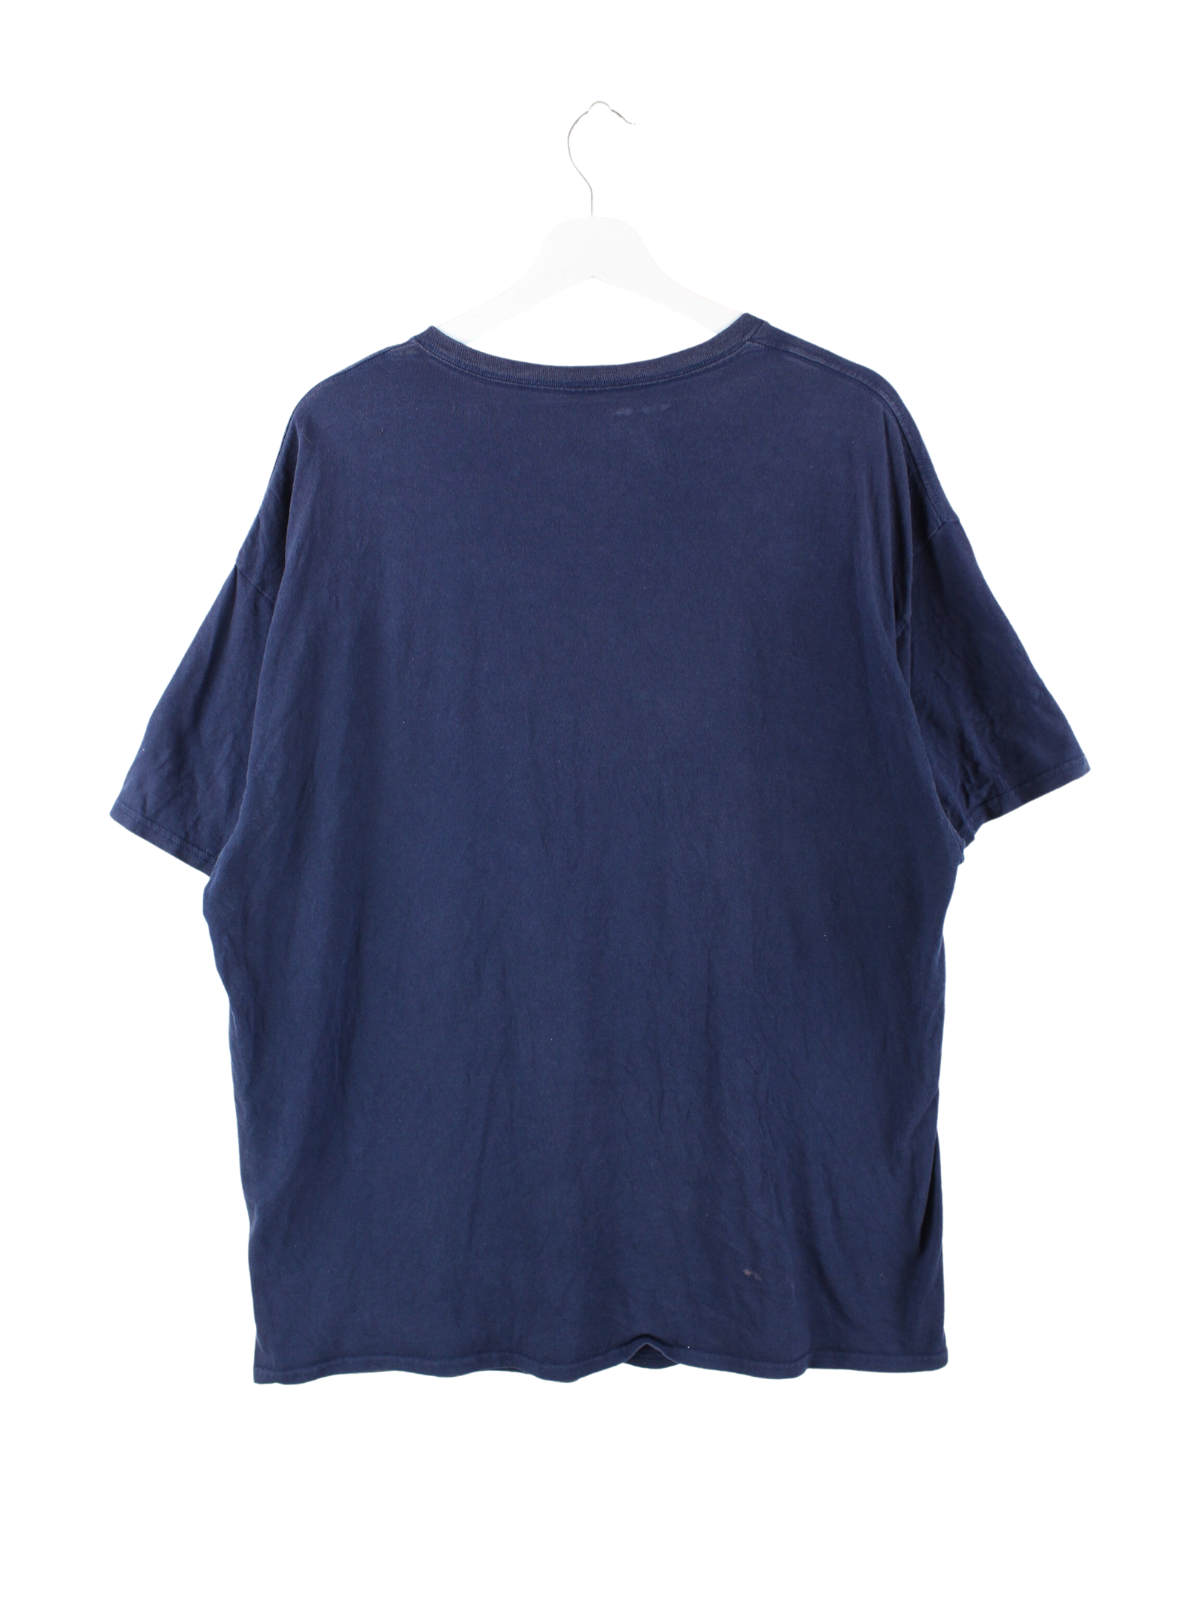 Champion Print T-Shirt Blau XXL